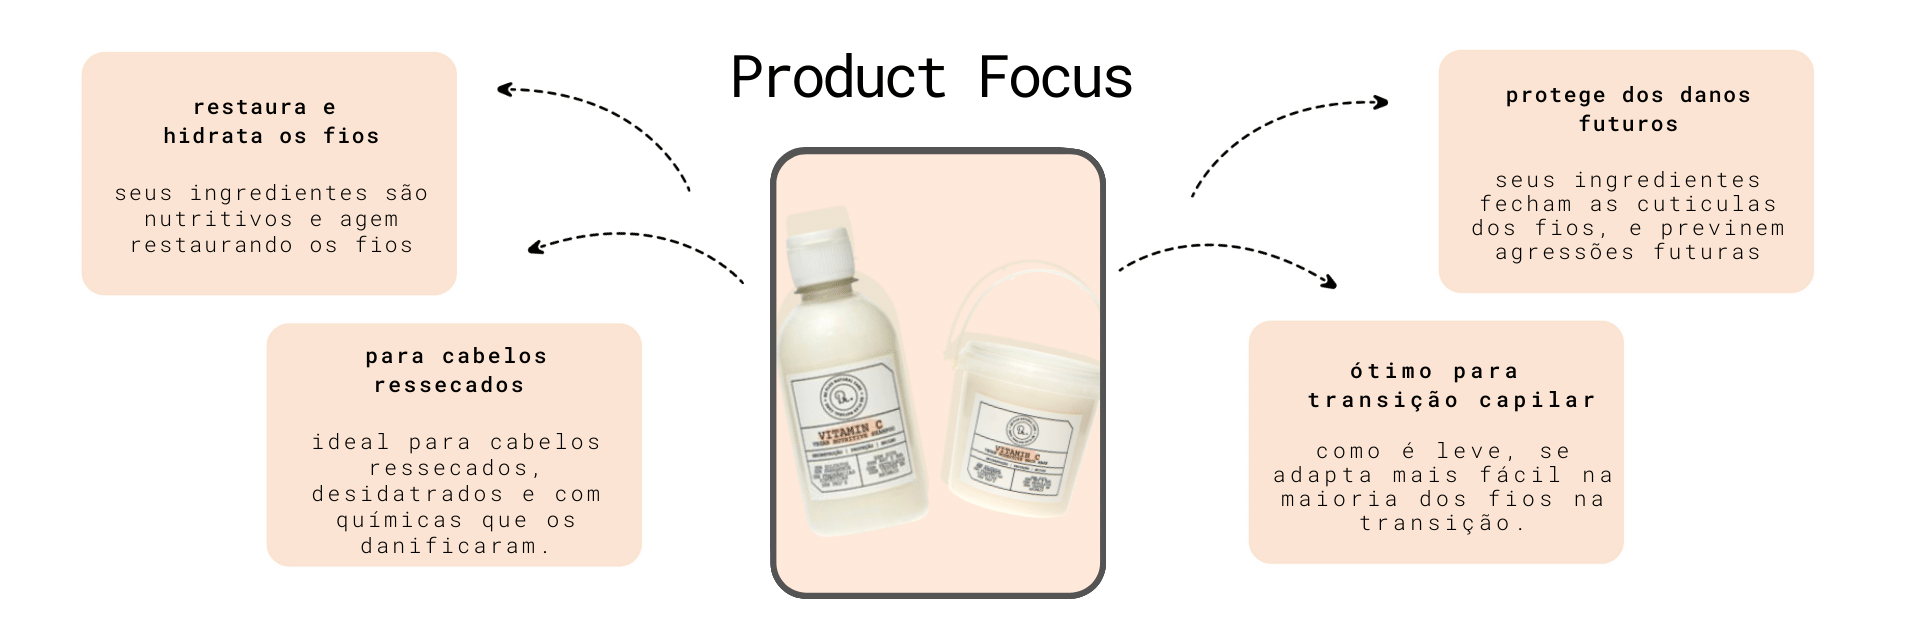 [Banner produto] shampoo vit c